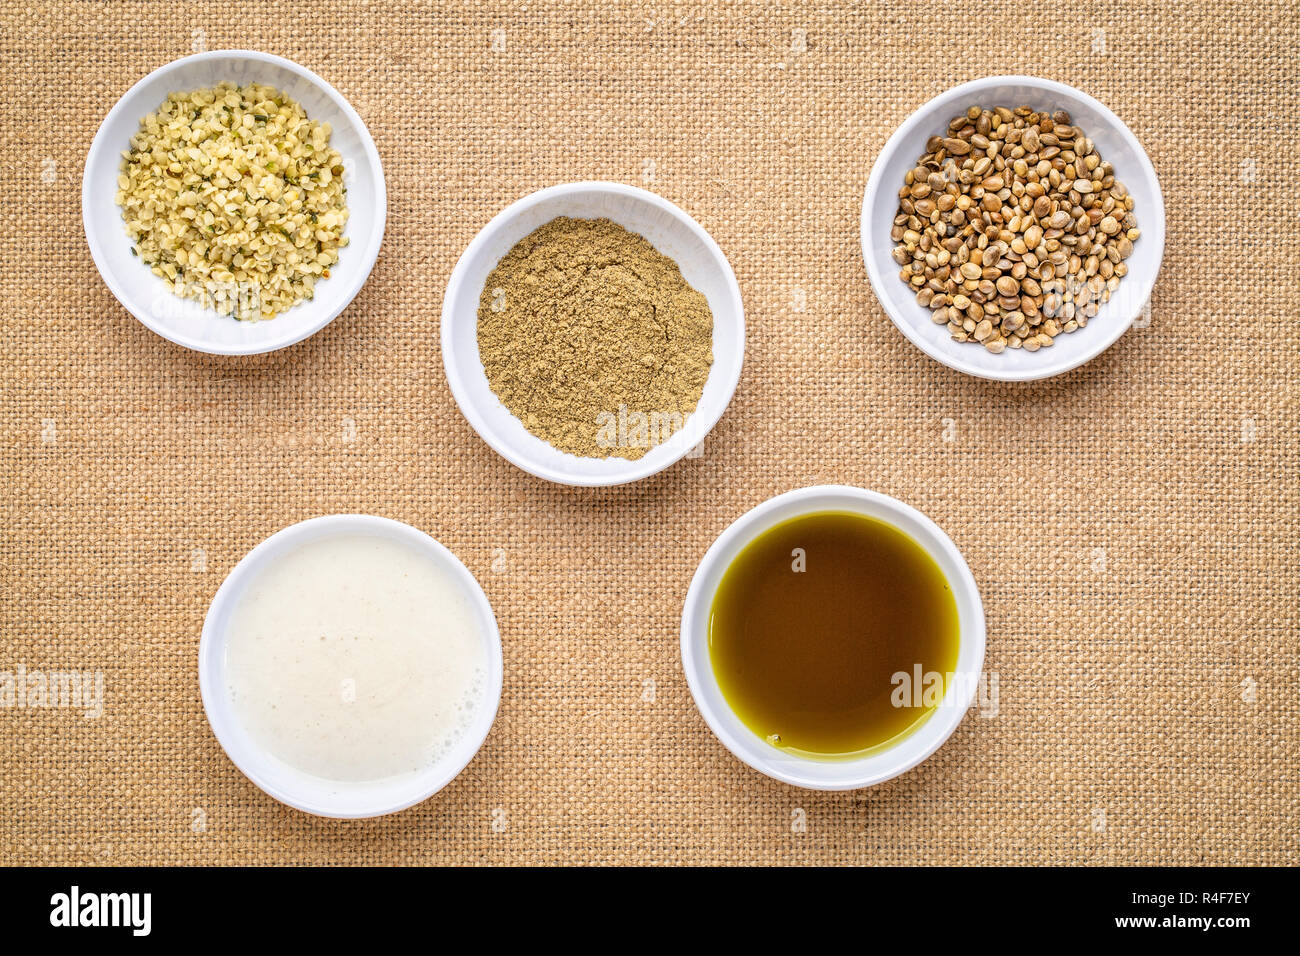 La raccolta di semi di canapa prodotto: cuori, proteine in polvere, latte e olio in piccole ciotole bianco contro la tela Canvas Foto Stock